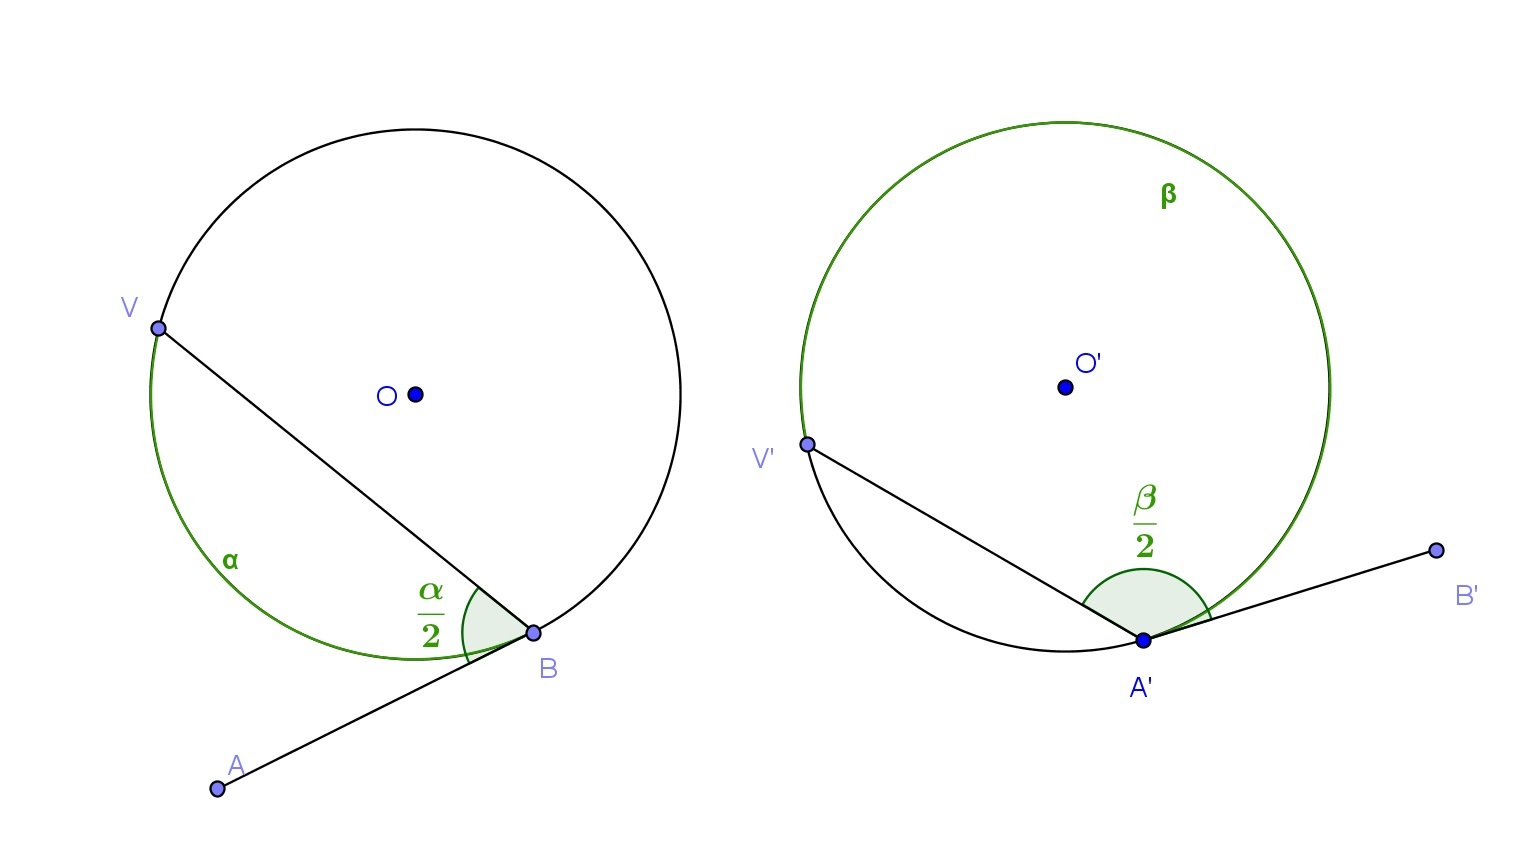 de centro em M e raio OM. Chamando de T o ponto de intersecção entre as duas cirncuferências, temos que a reta P T é tangente à λ e portanto é uma solução.